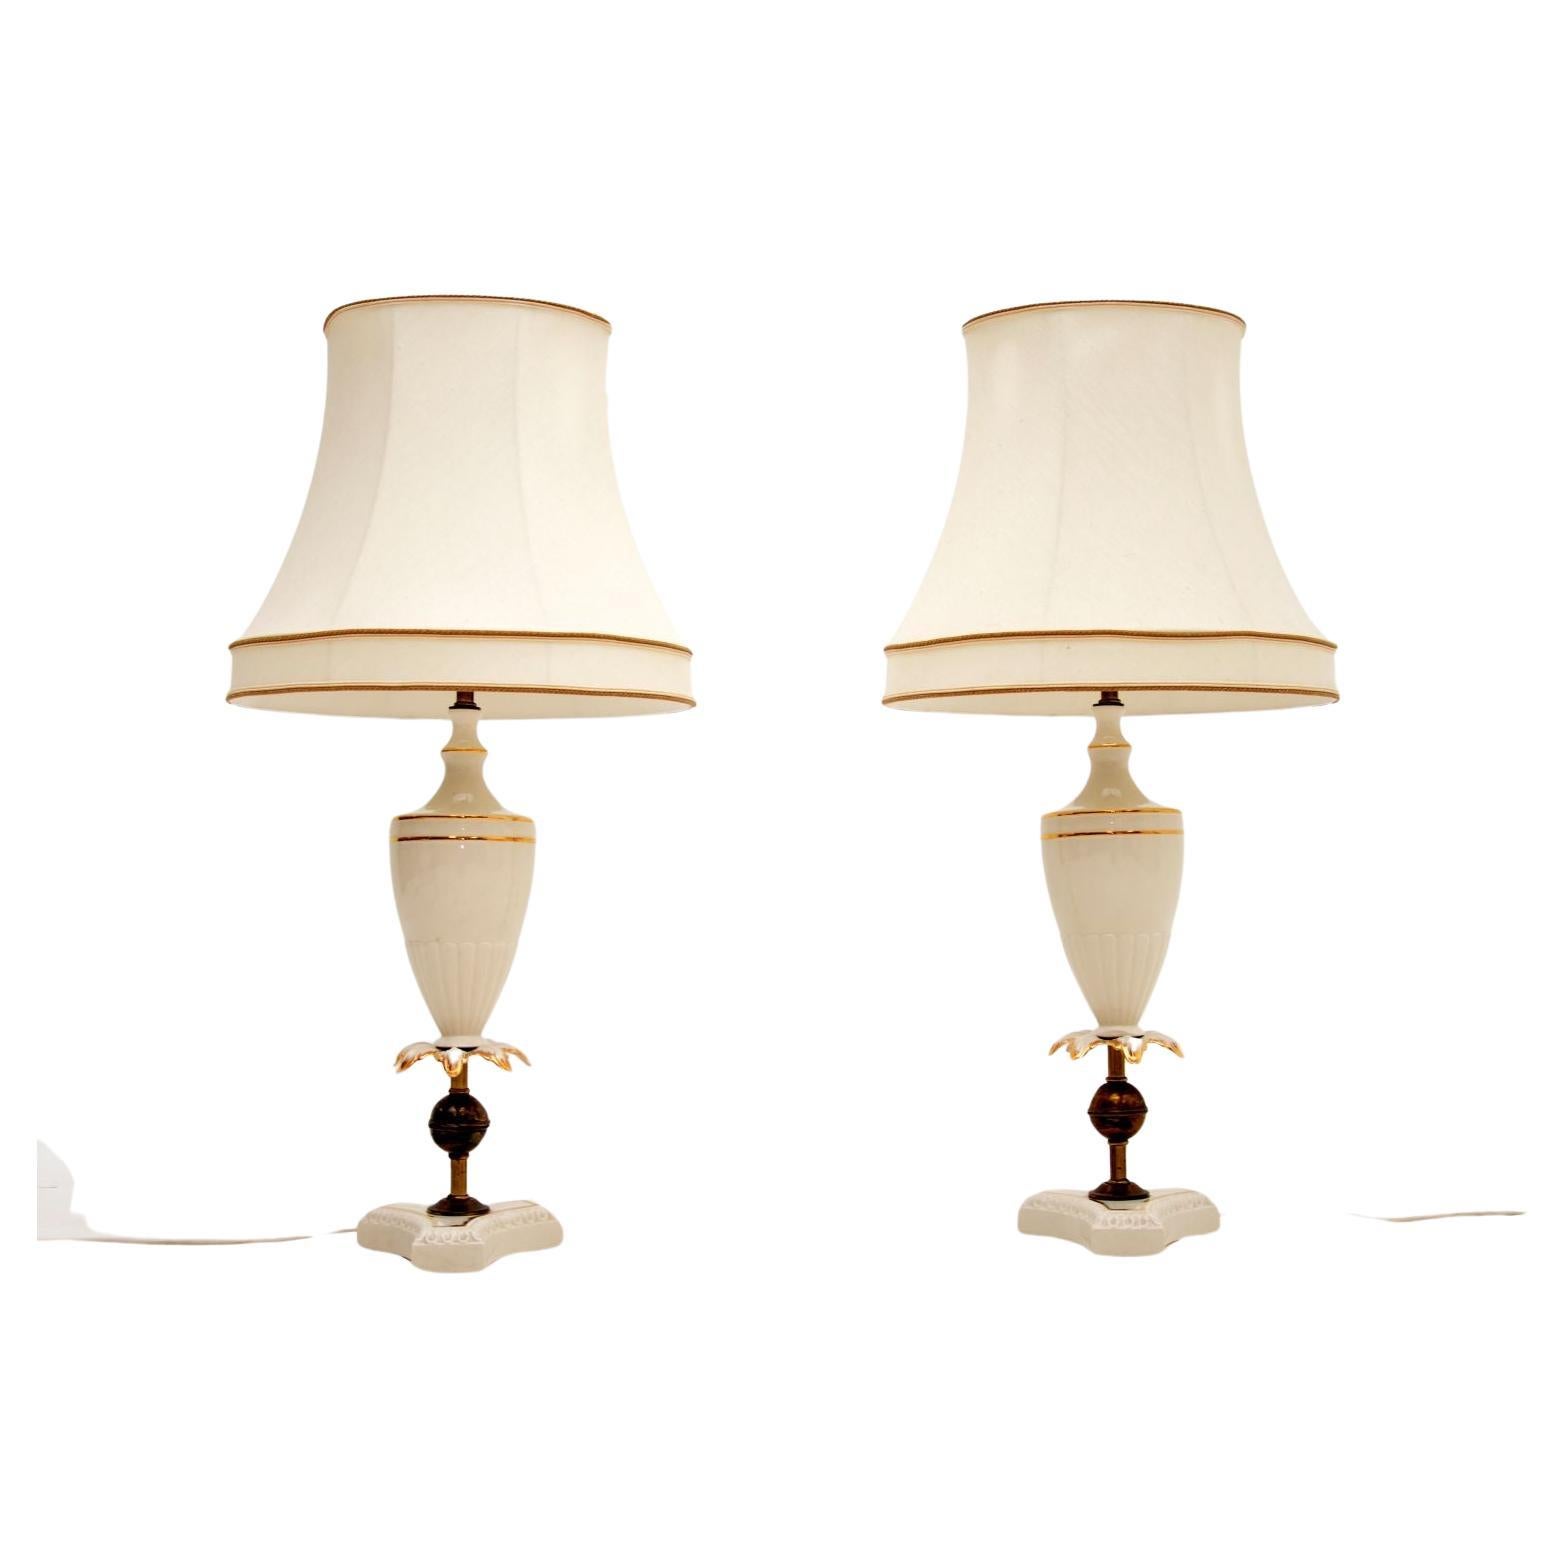 Pair of Antique Italian Ceramic Table Lamps